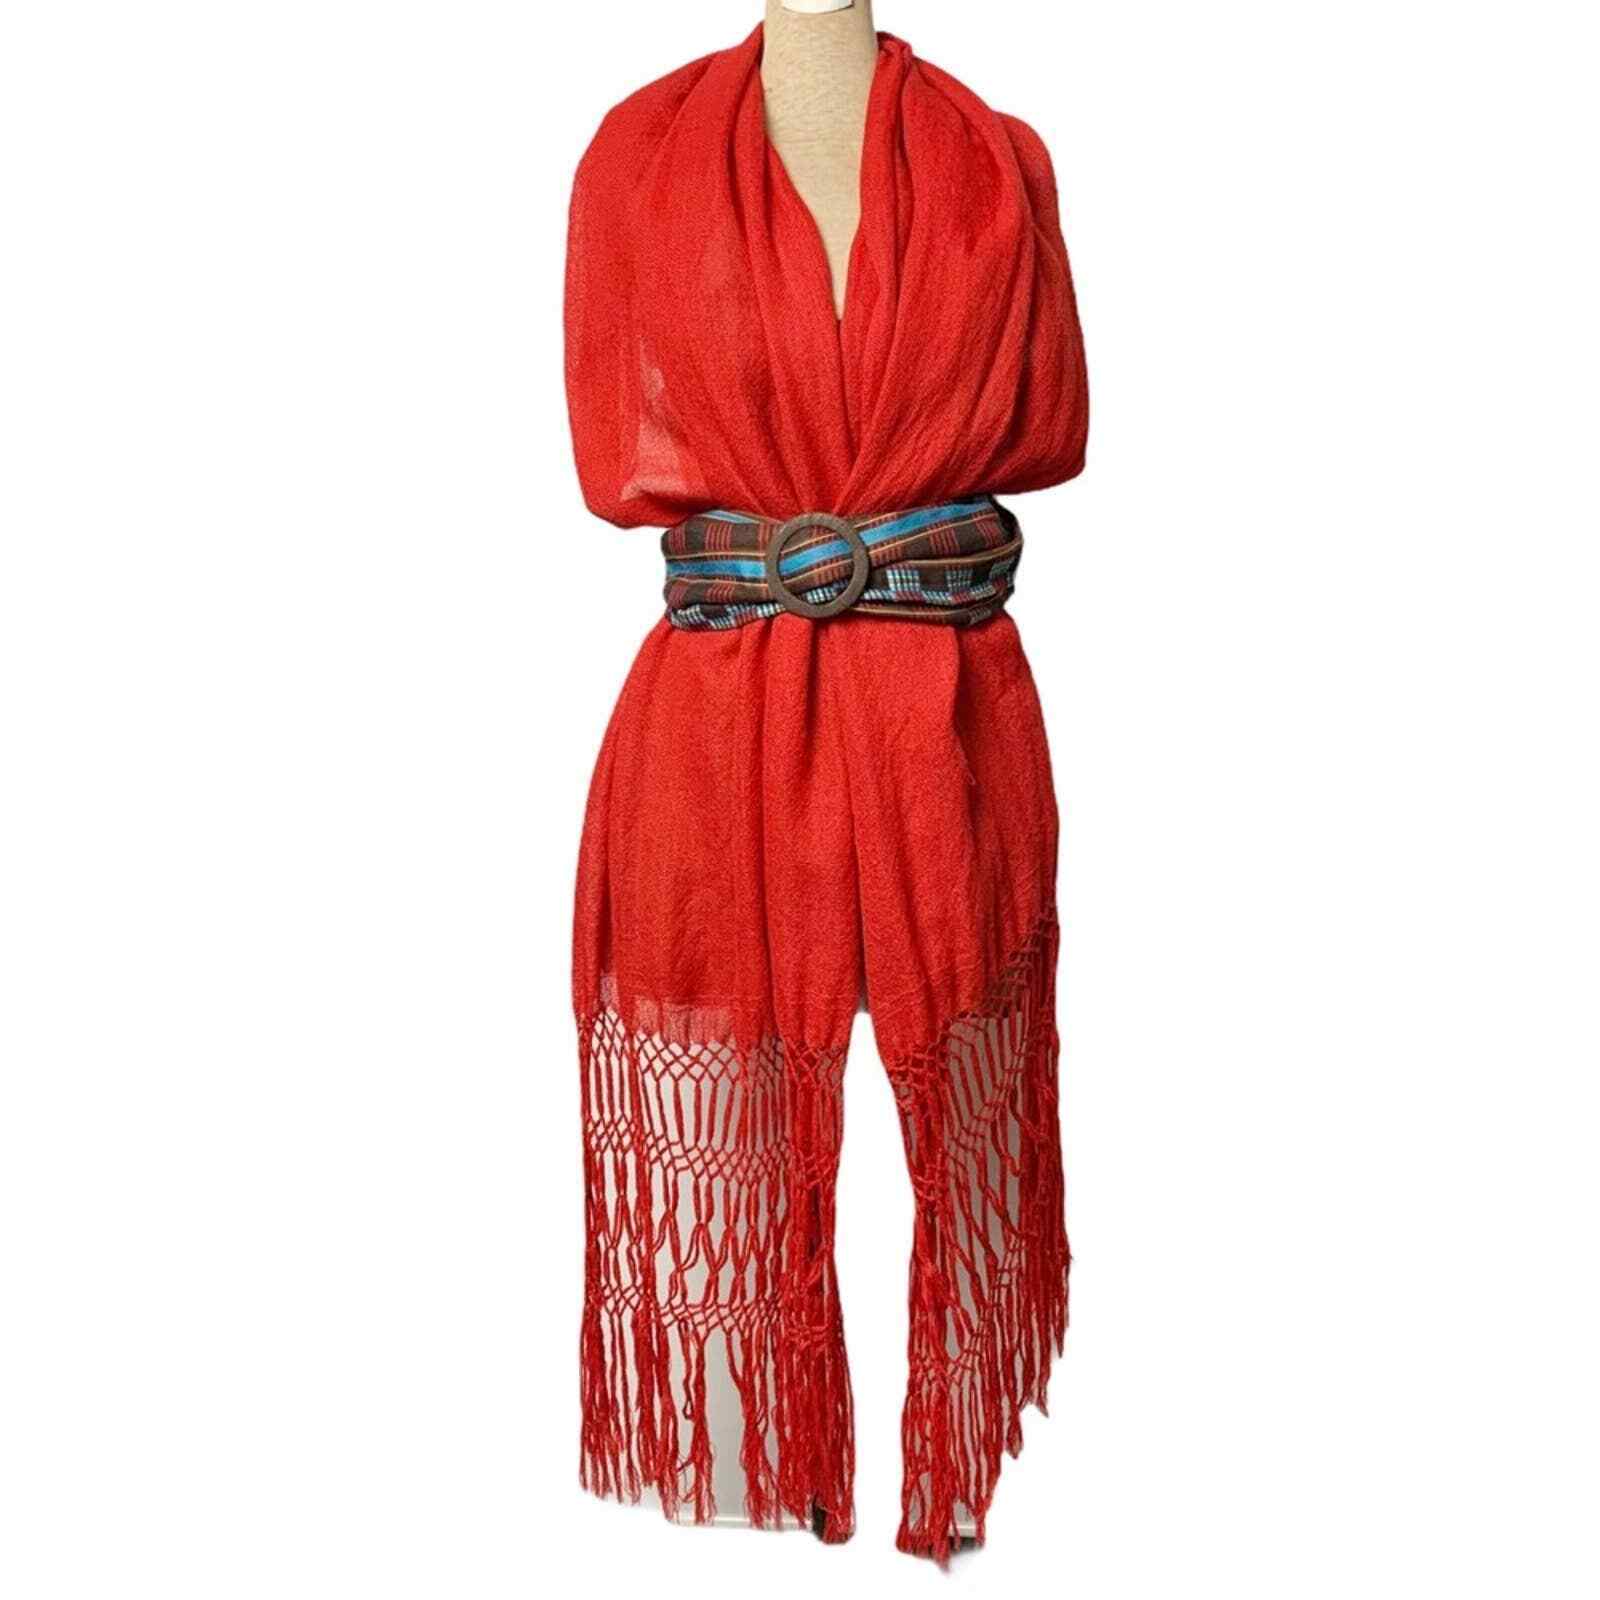 Vintage shawl wrap scarf boho braided fringe tomato red 50”